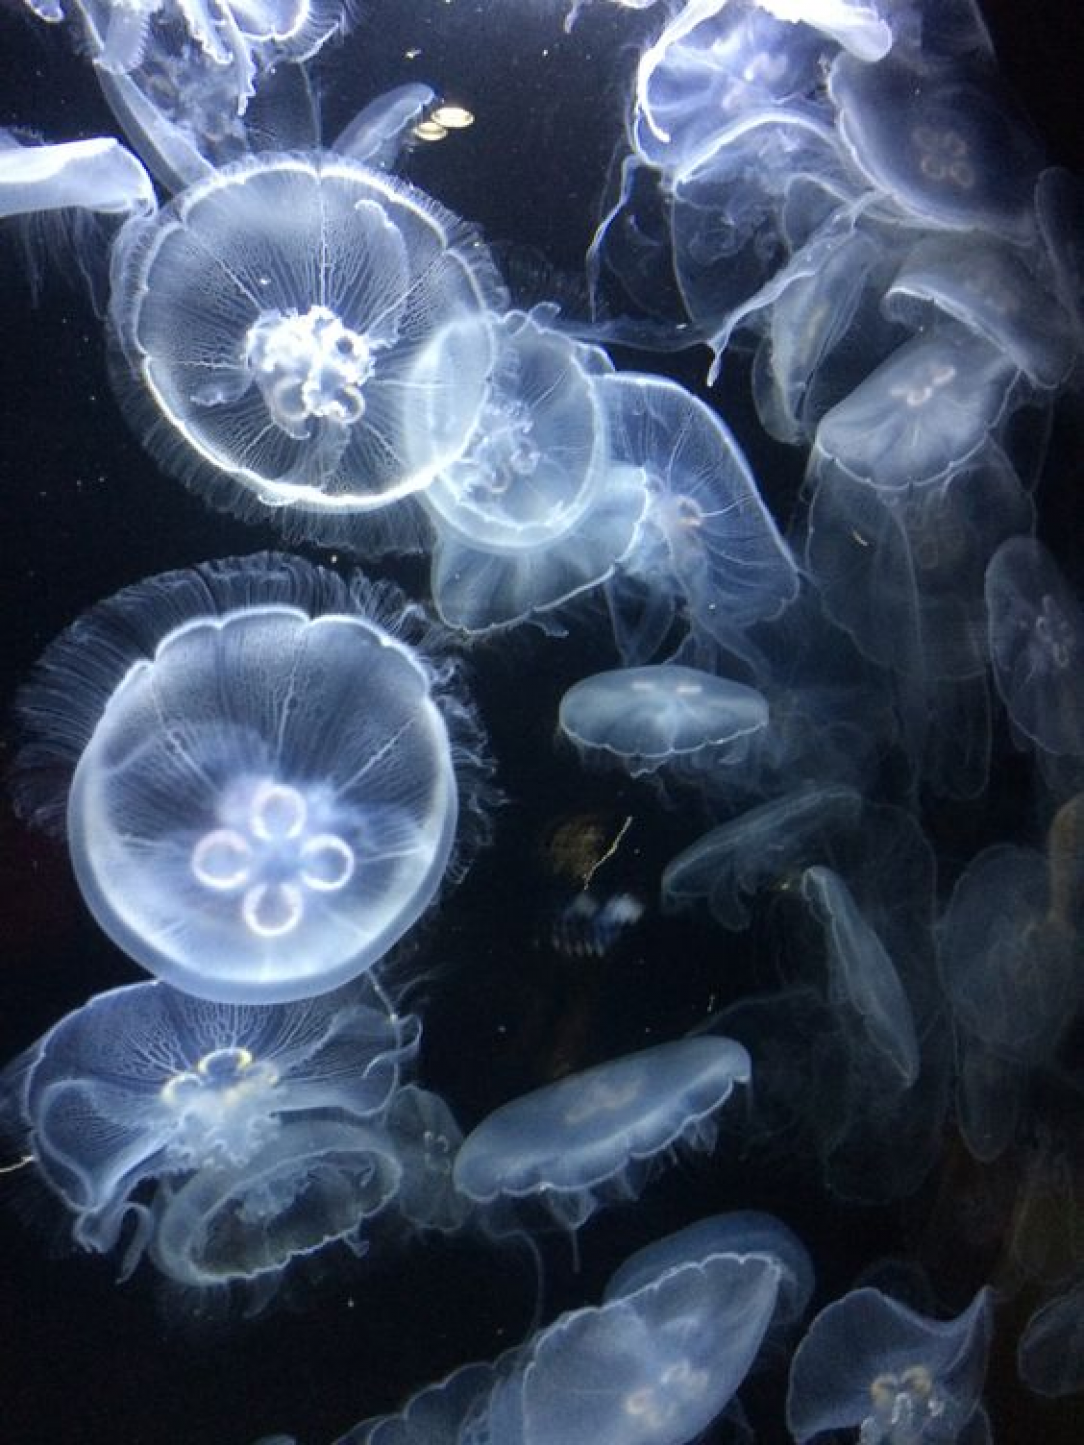 Undersea wonders